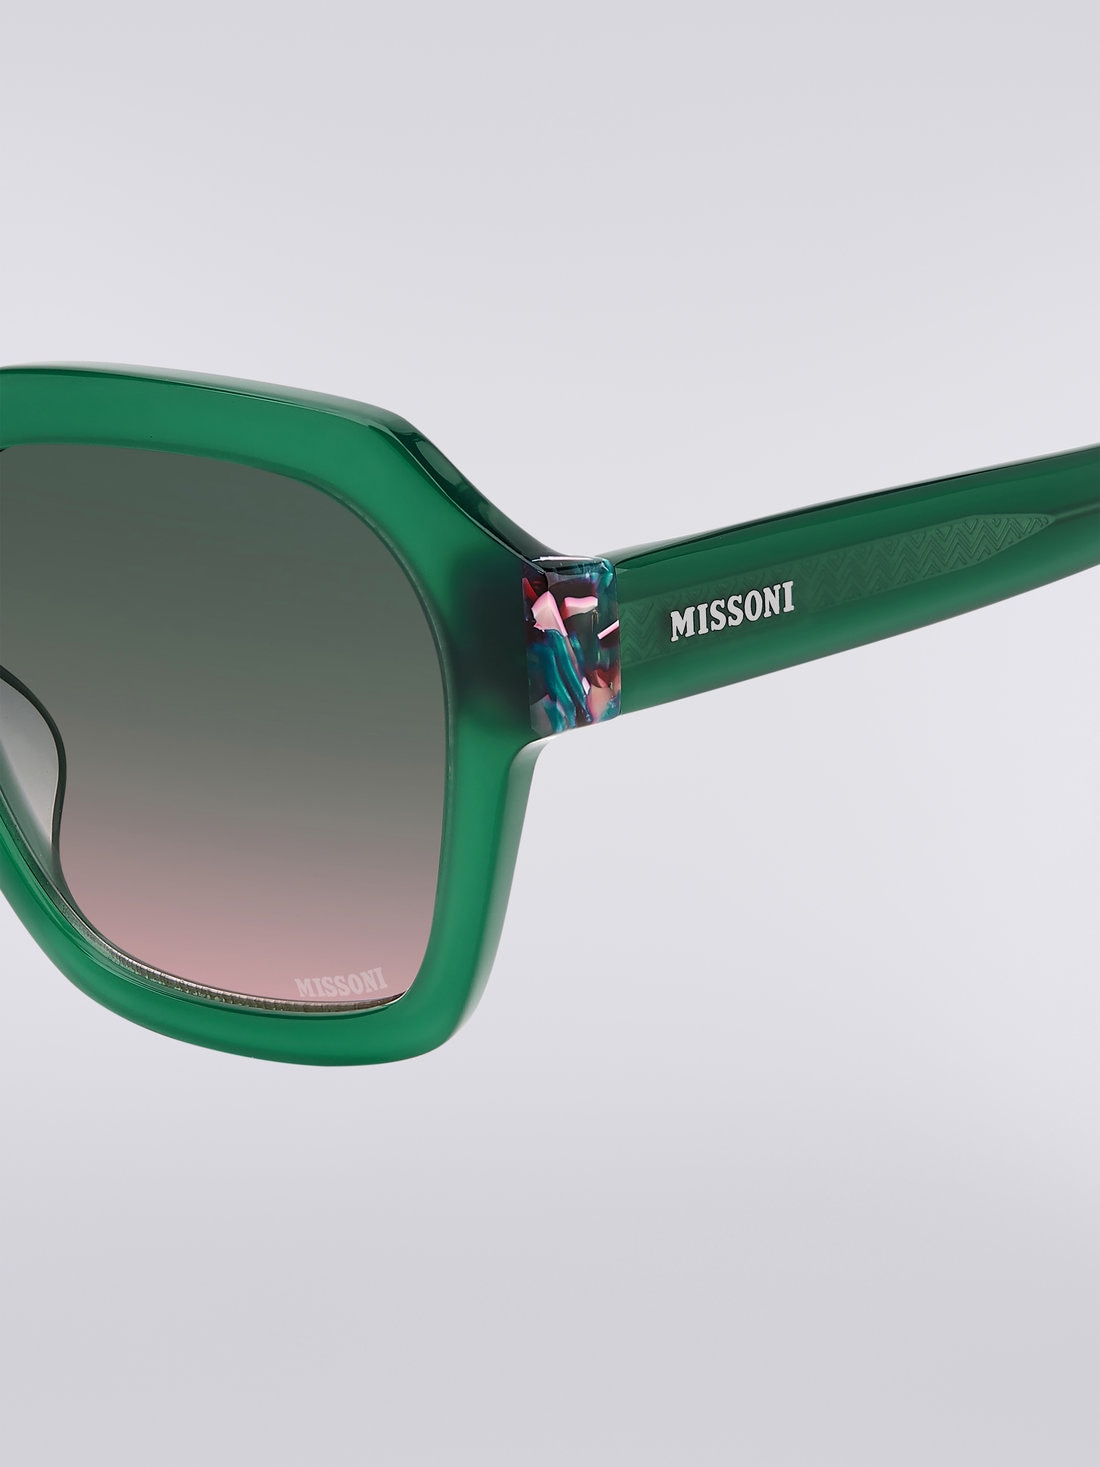 Missoni Seasonal Sonnenbrille aus Acetat, Grün & Rosa - 8051575840159 - 3